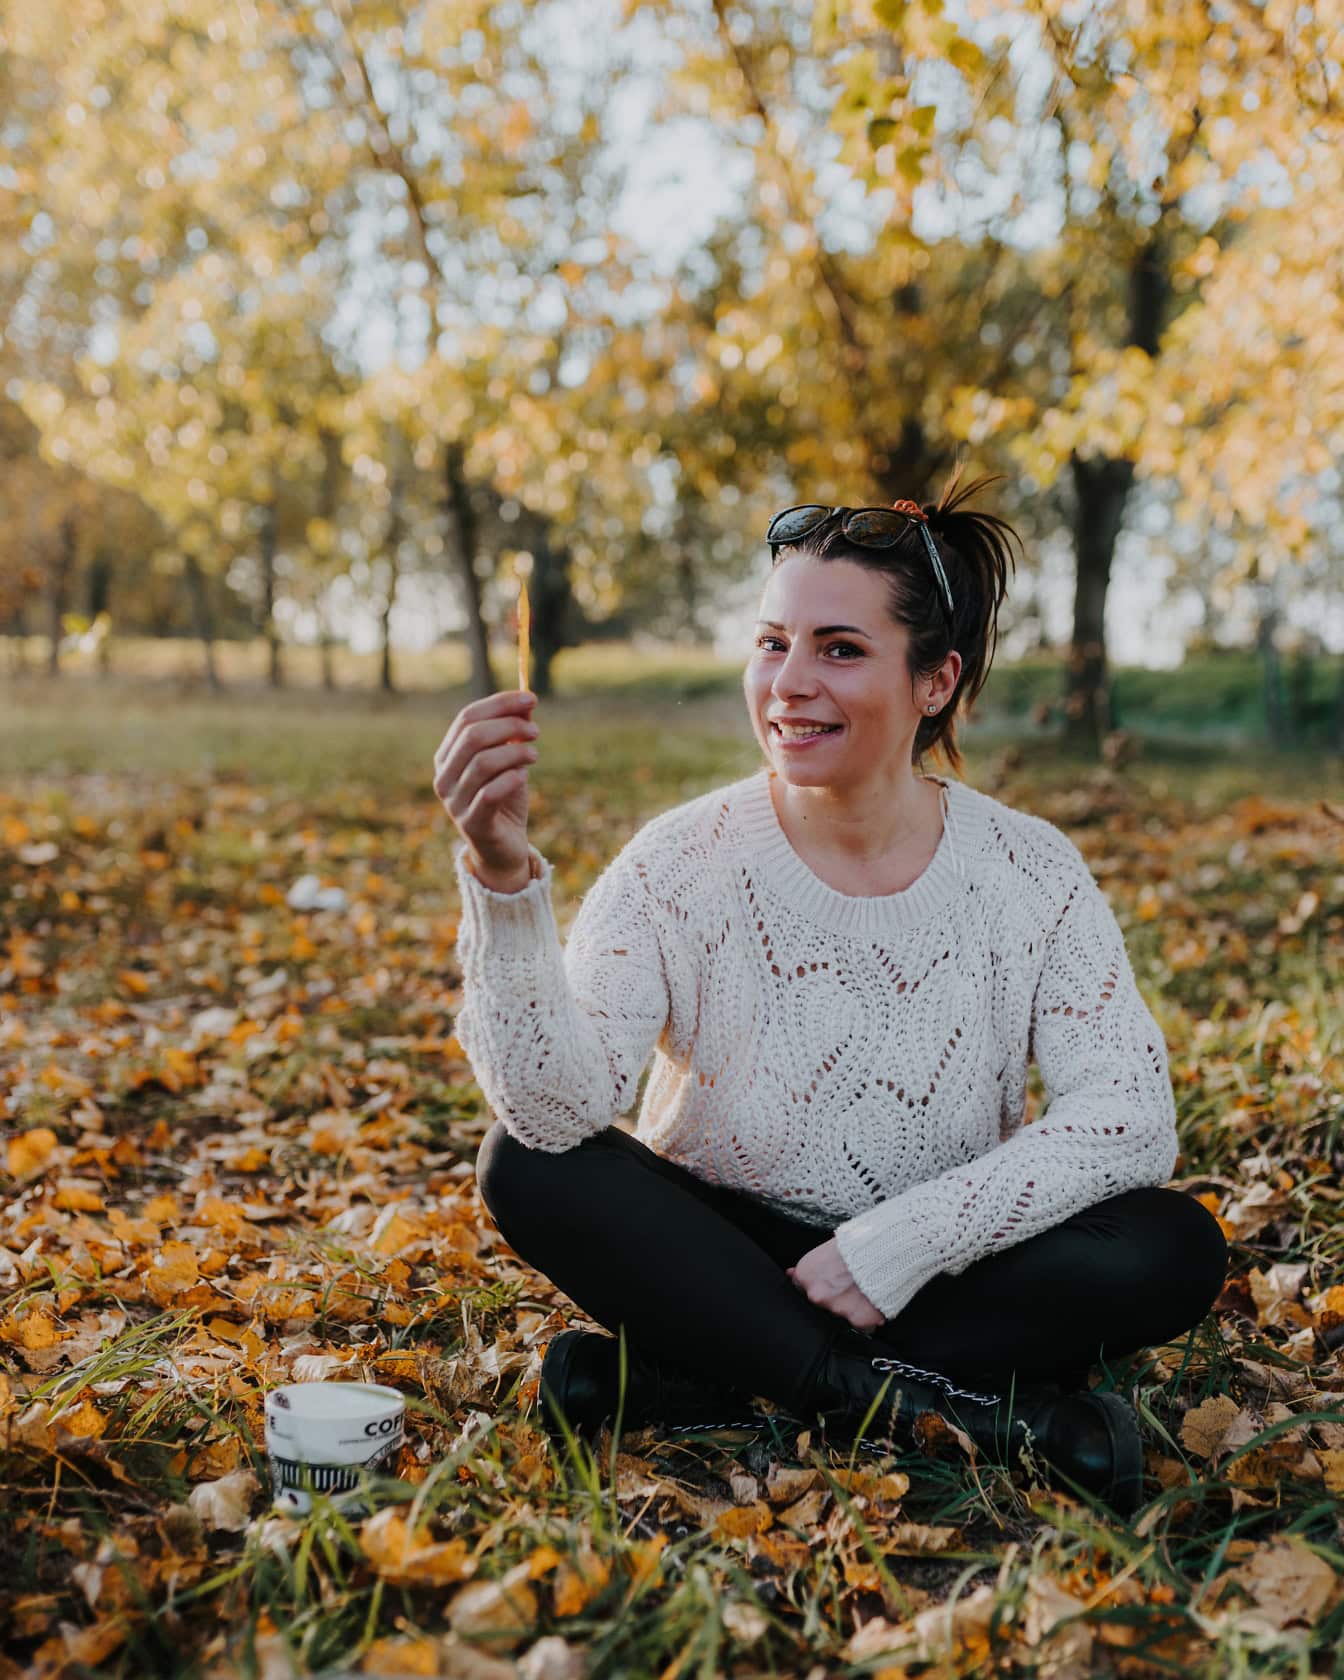 Portré egy mosolygós nő fehér pulóverben, aki a földön ül egy csésze kávéval a parkban ősszel